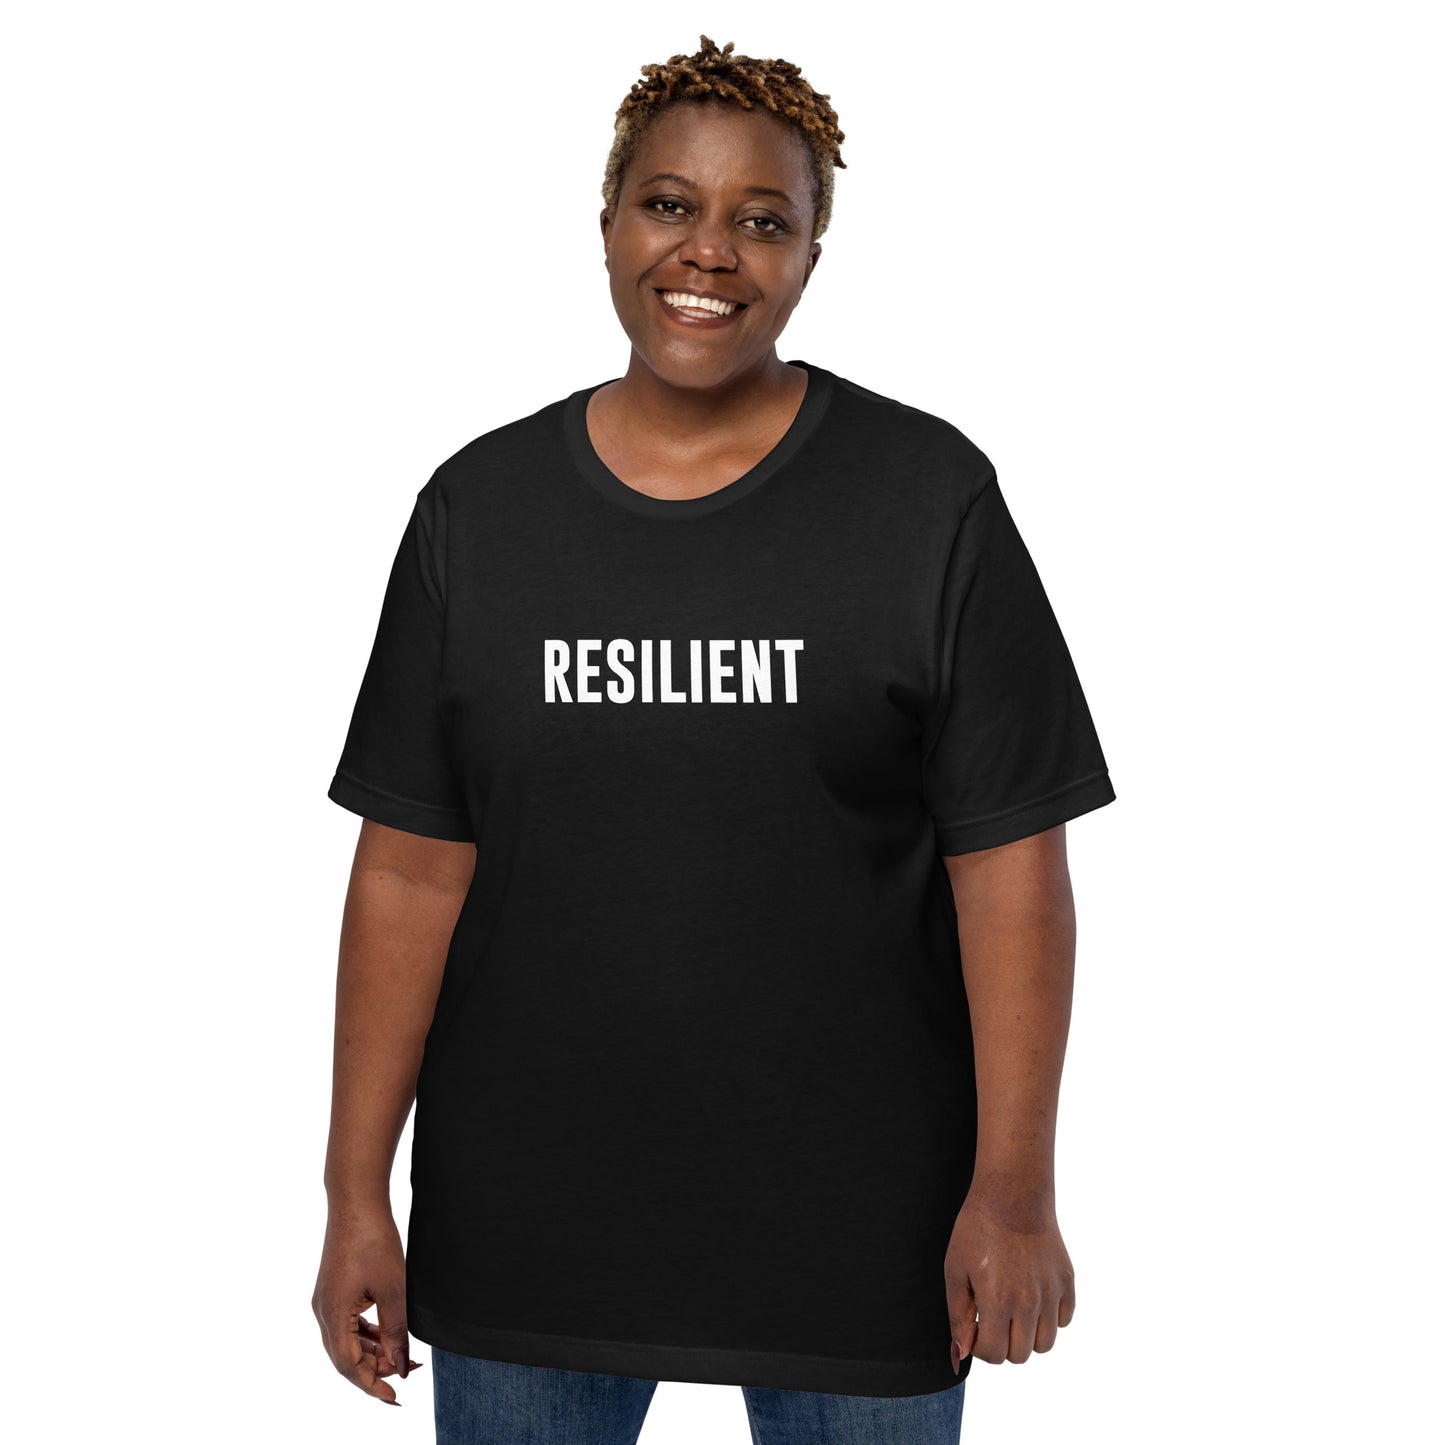 RESILIENT - Black Unisex T-shirt